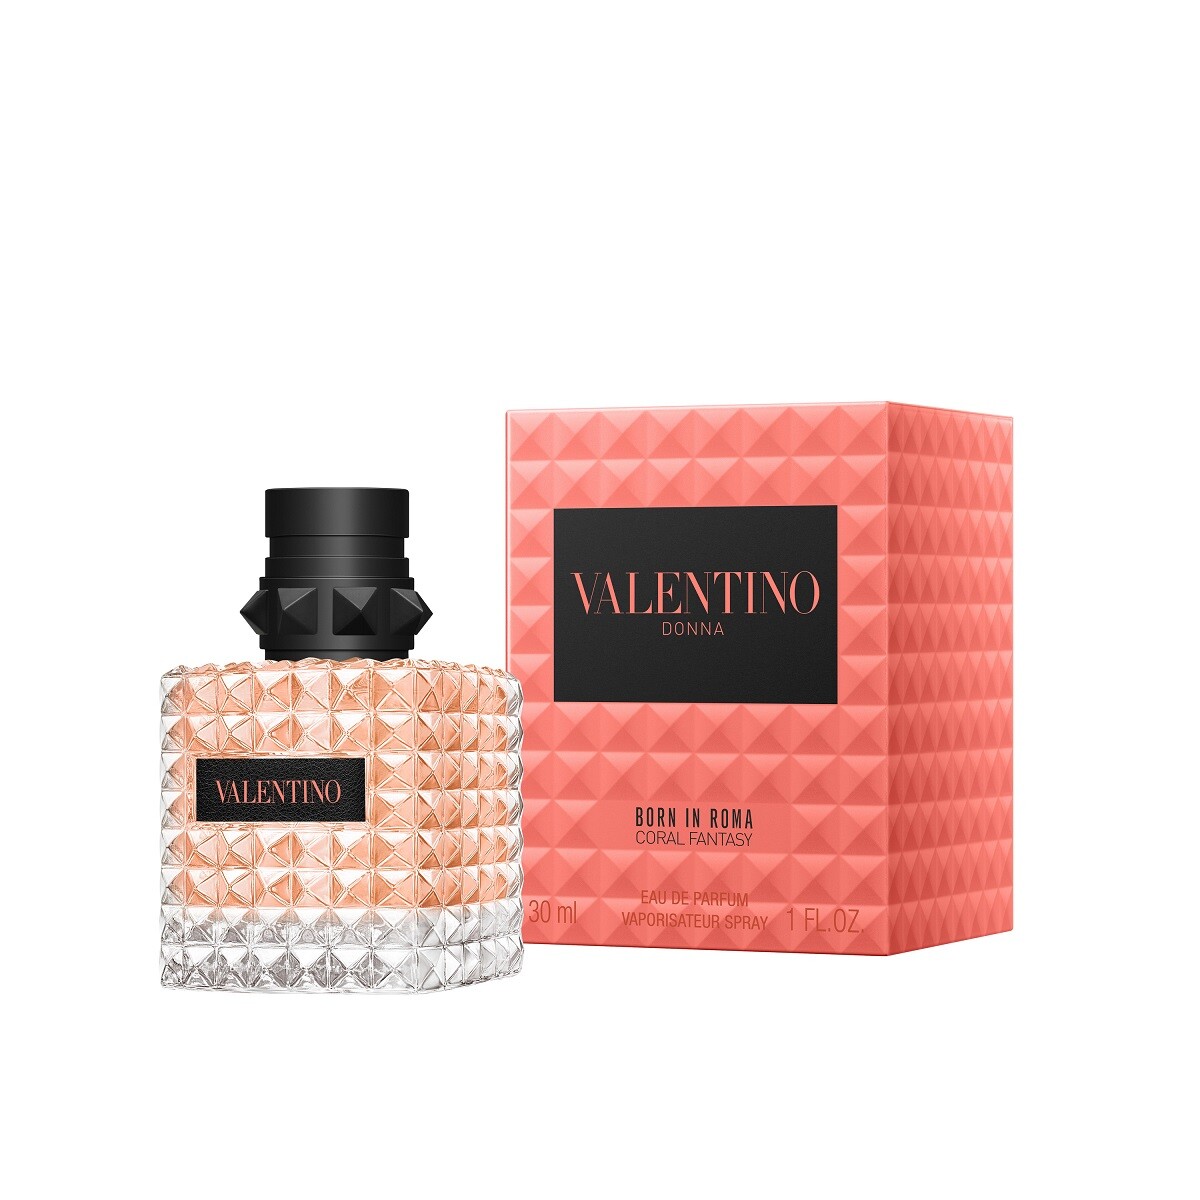 Perfume Valentino Born In Roma Coral Fantasy Donna Edp 30ml 